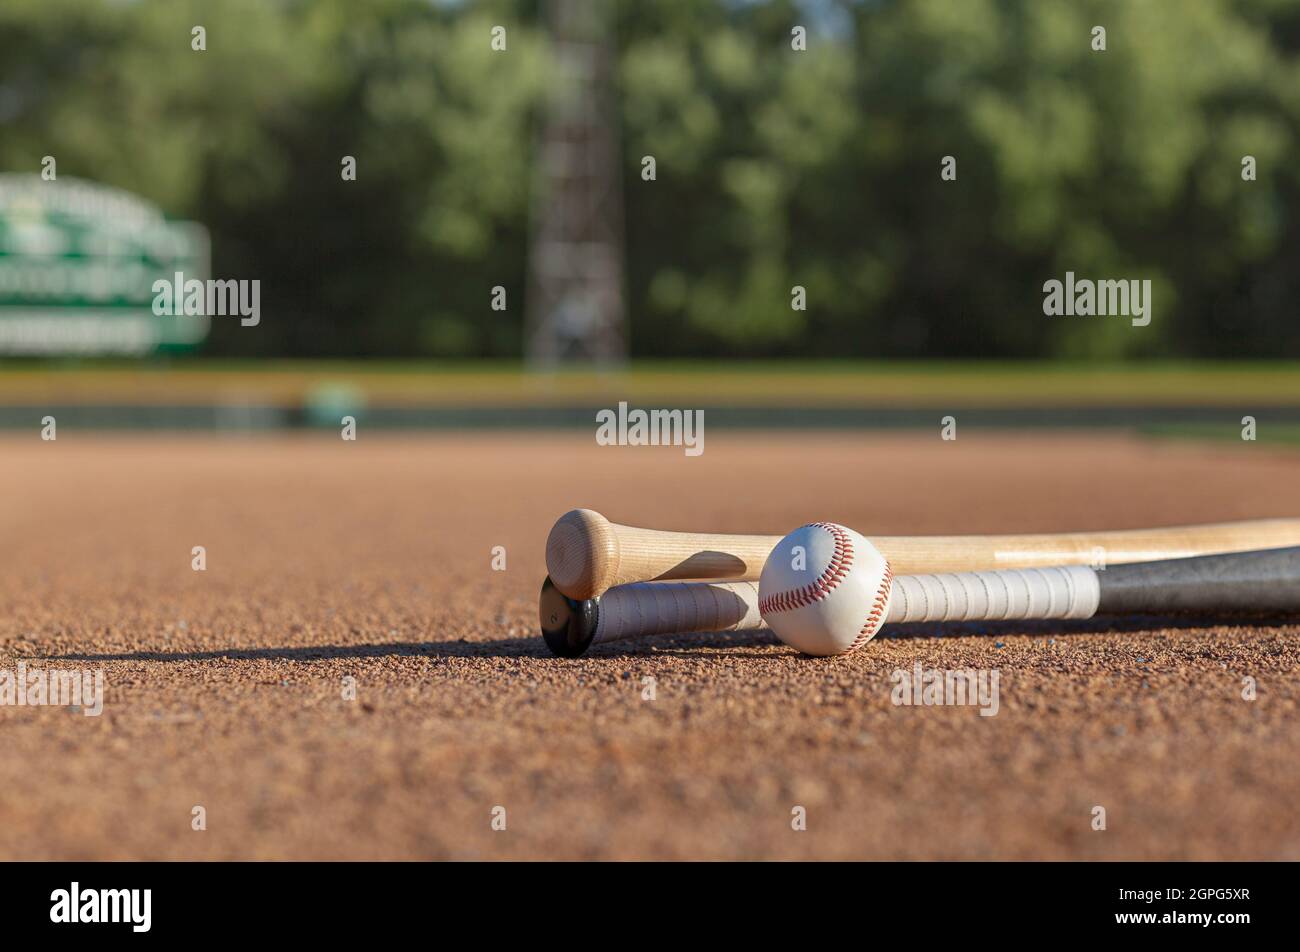 Vue à angle bas d'une base-ball et chauves-souris en bois sur l'infield de terre du parc de base-ball en lumière du soleil de l'après-midi Banque D'Images